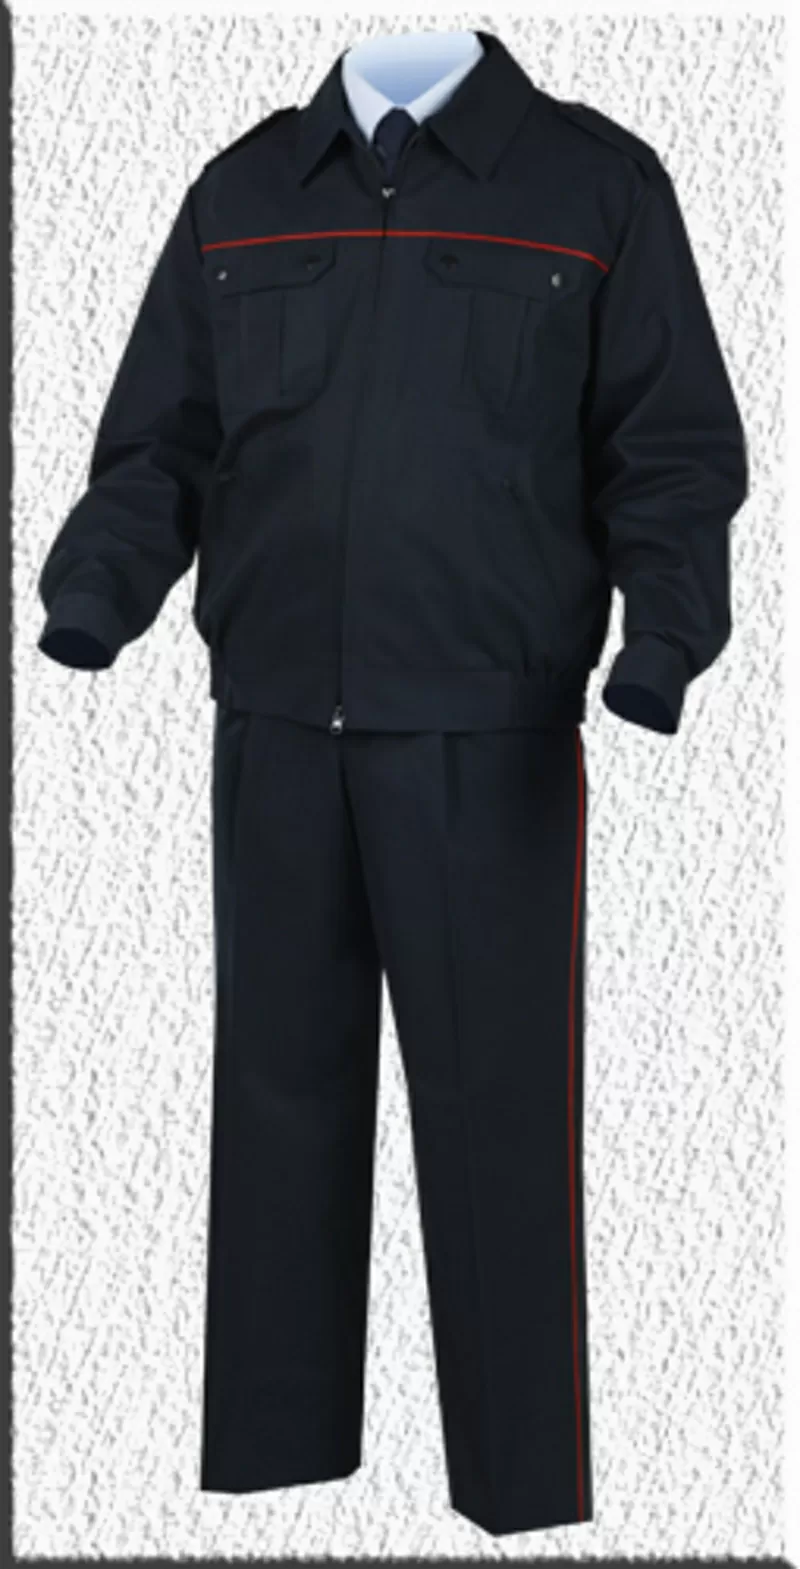 форменная куртка для сотрудников мвд полиции мужской летняя 3